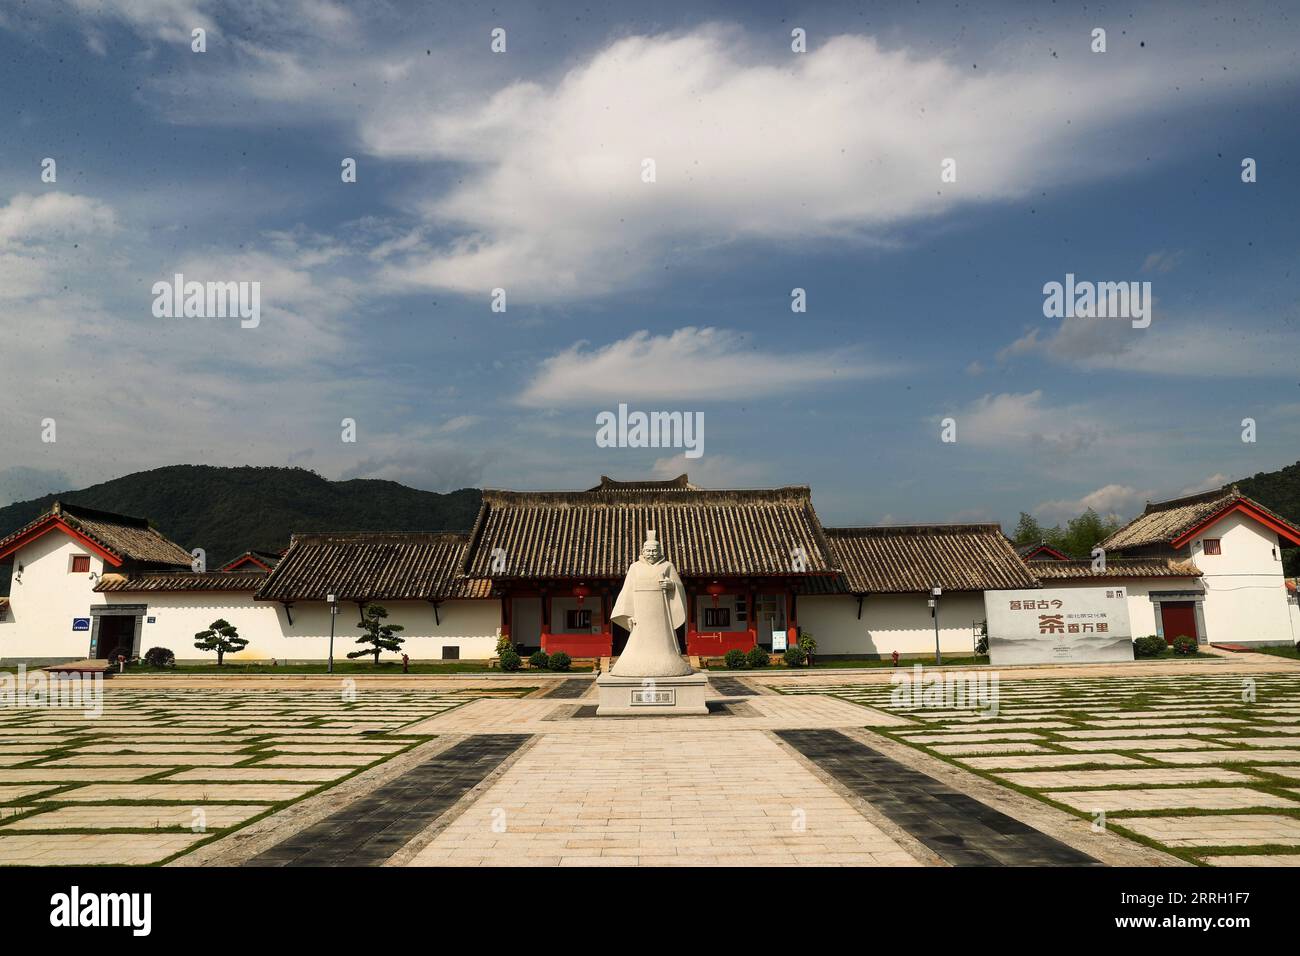 220608 -- WUYISHAN, 8 giugno 2022 -- foto scattata il 16 maggio 2022 mostra il museo di un'area di protezione per i resti dell'antica dinastia Han 202 a.C.-220 d.C. a sud-est del monte Wuyi, nella provincia del Fujian della Cina sud-orientale. Il monte Wuyi, situato nella provincia sud-orientale cinese del Fujian, è un paesaggio di grande bellezza, in cui le cime e le rocce di forme grottesche sono circondate da limpidi ruscelli e abbracciate da alberi verdi e piante di bambù. Fungendo da habitat per un gran numero di animali selvatici, è di enorme importanza per la conservazione della biodiversità. Ci sono una serie di archeologici eccezionali Foto Stock